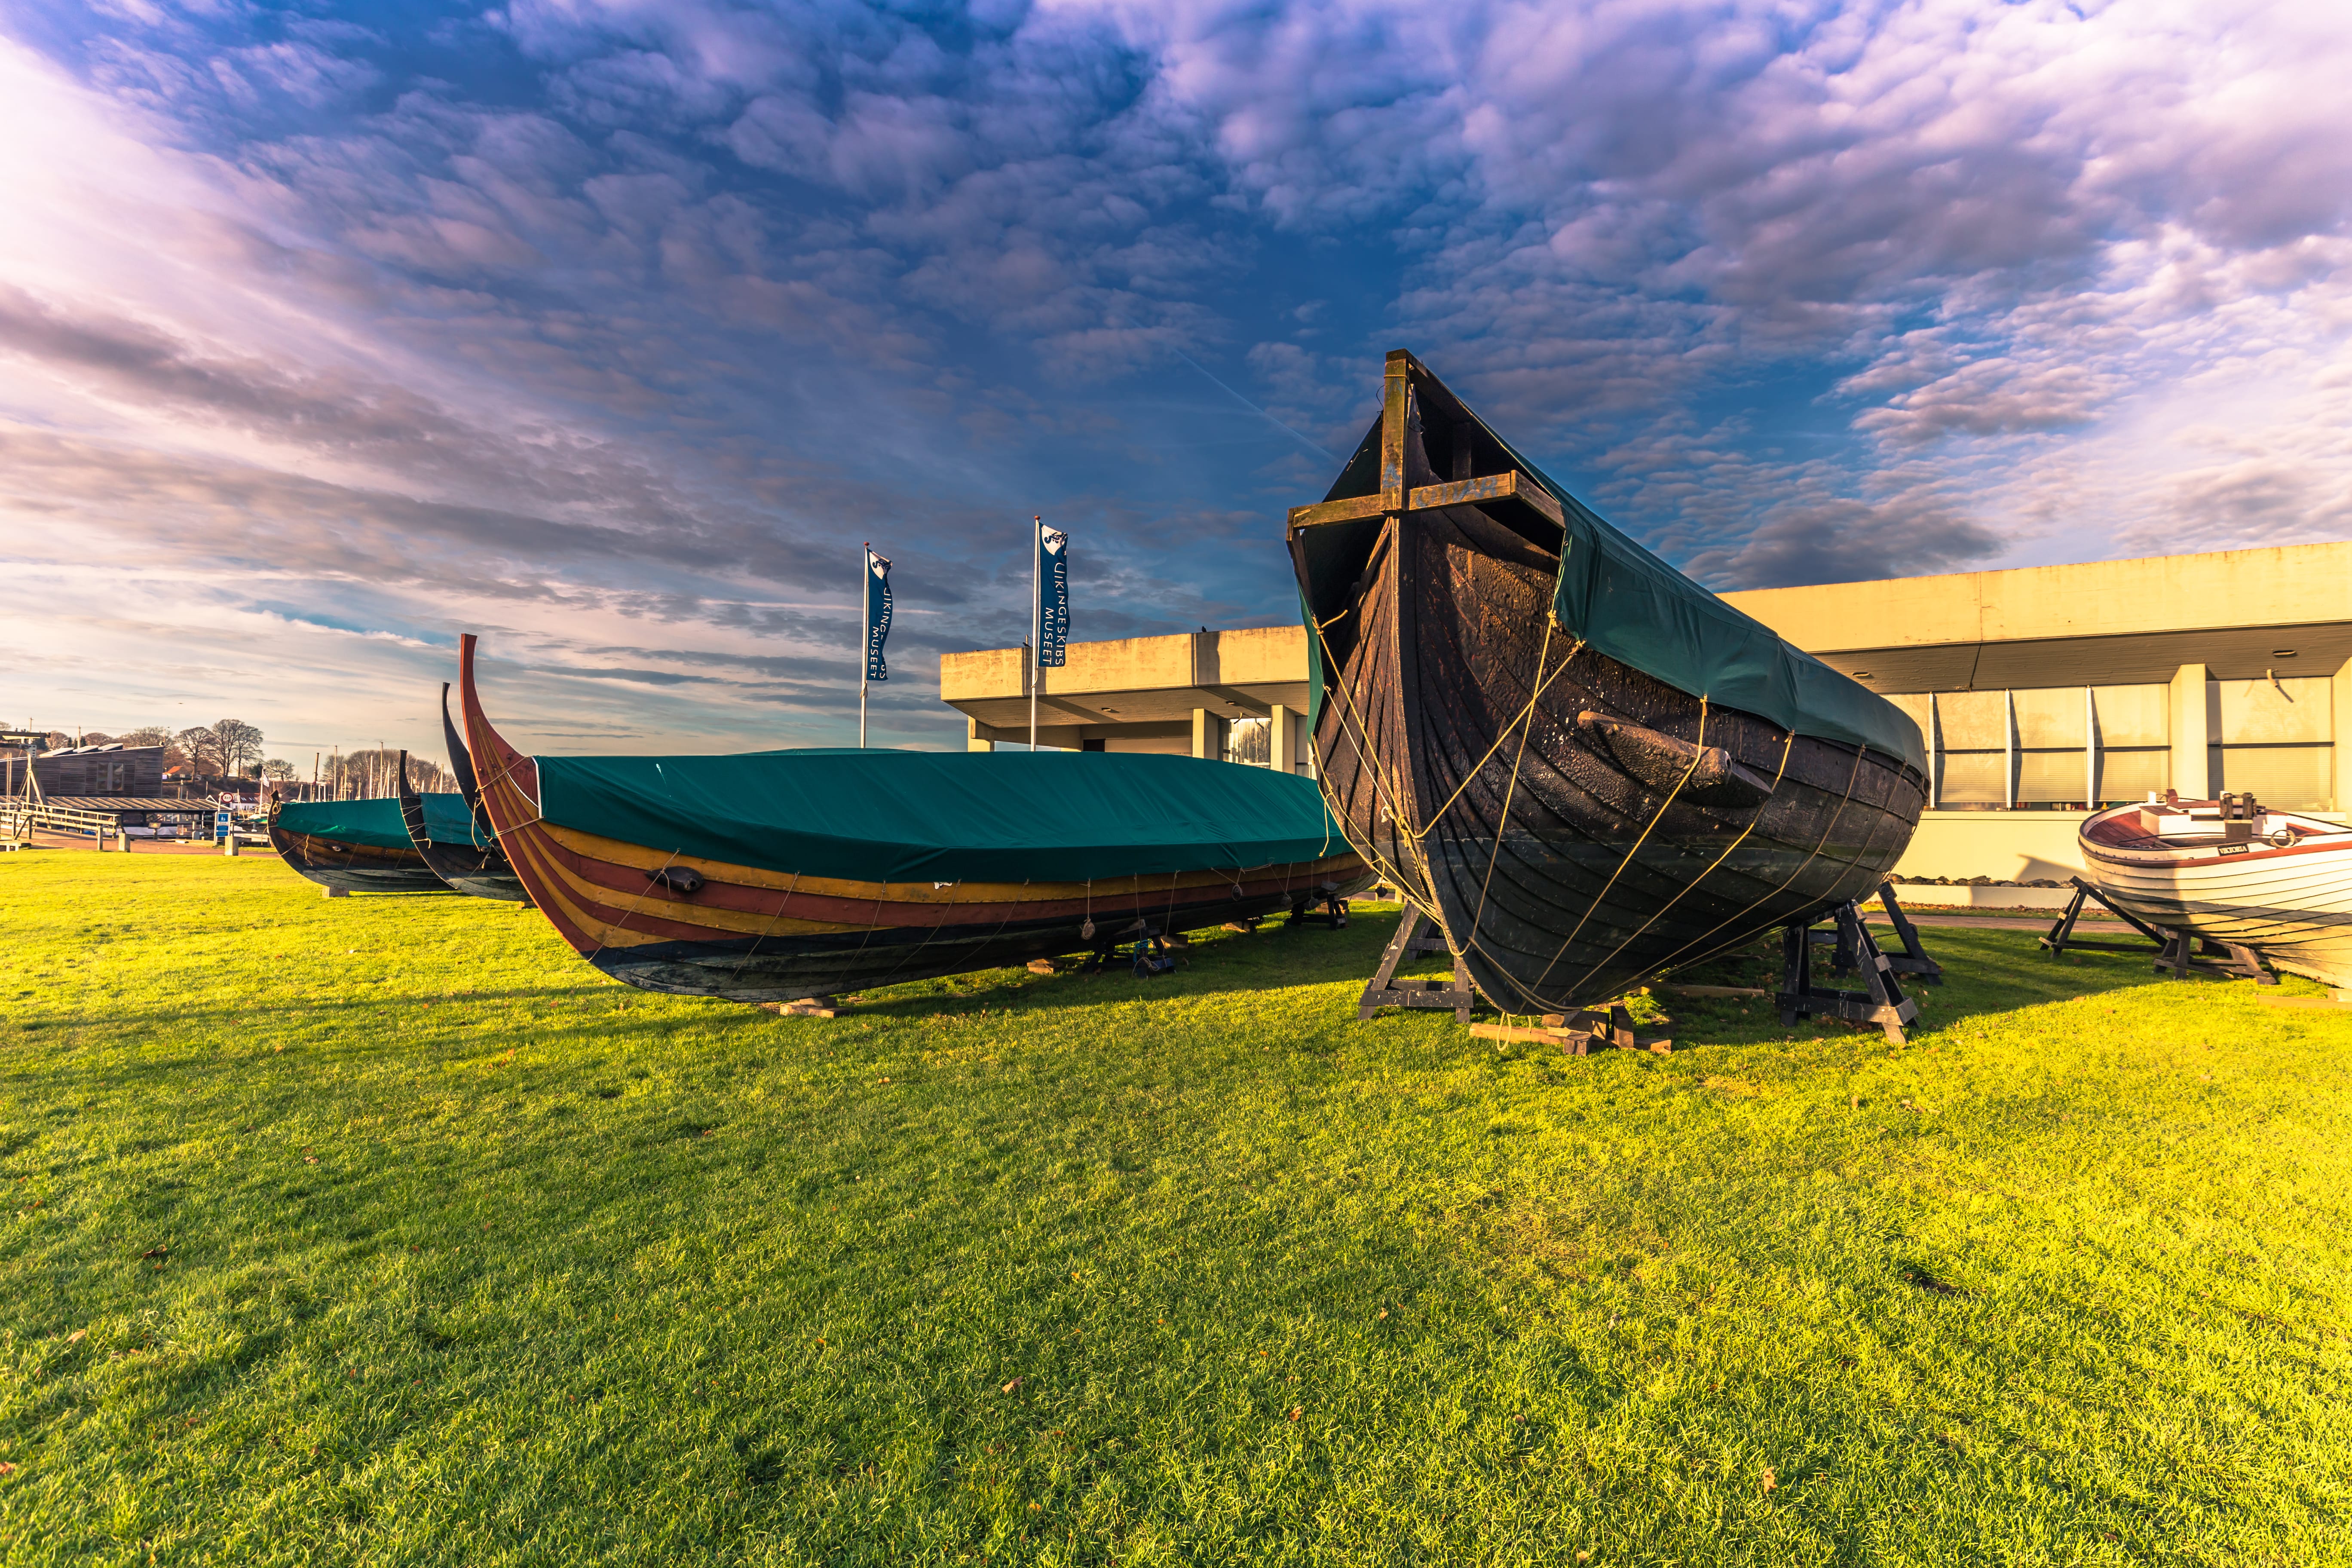 Музей кораблей викингов в Роскилле